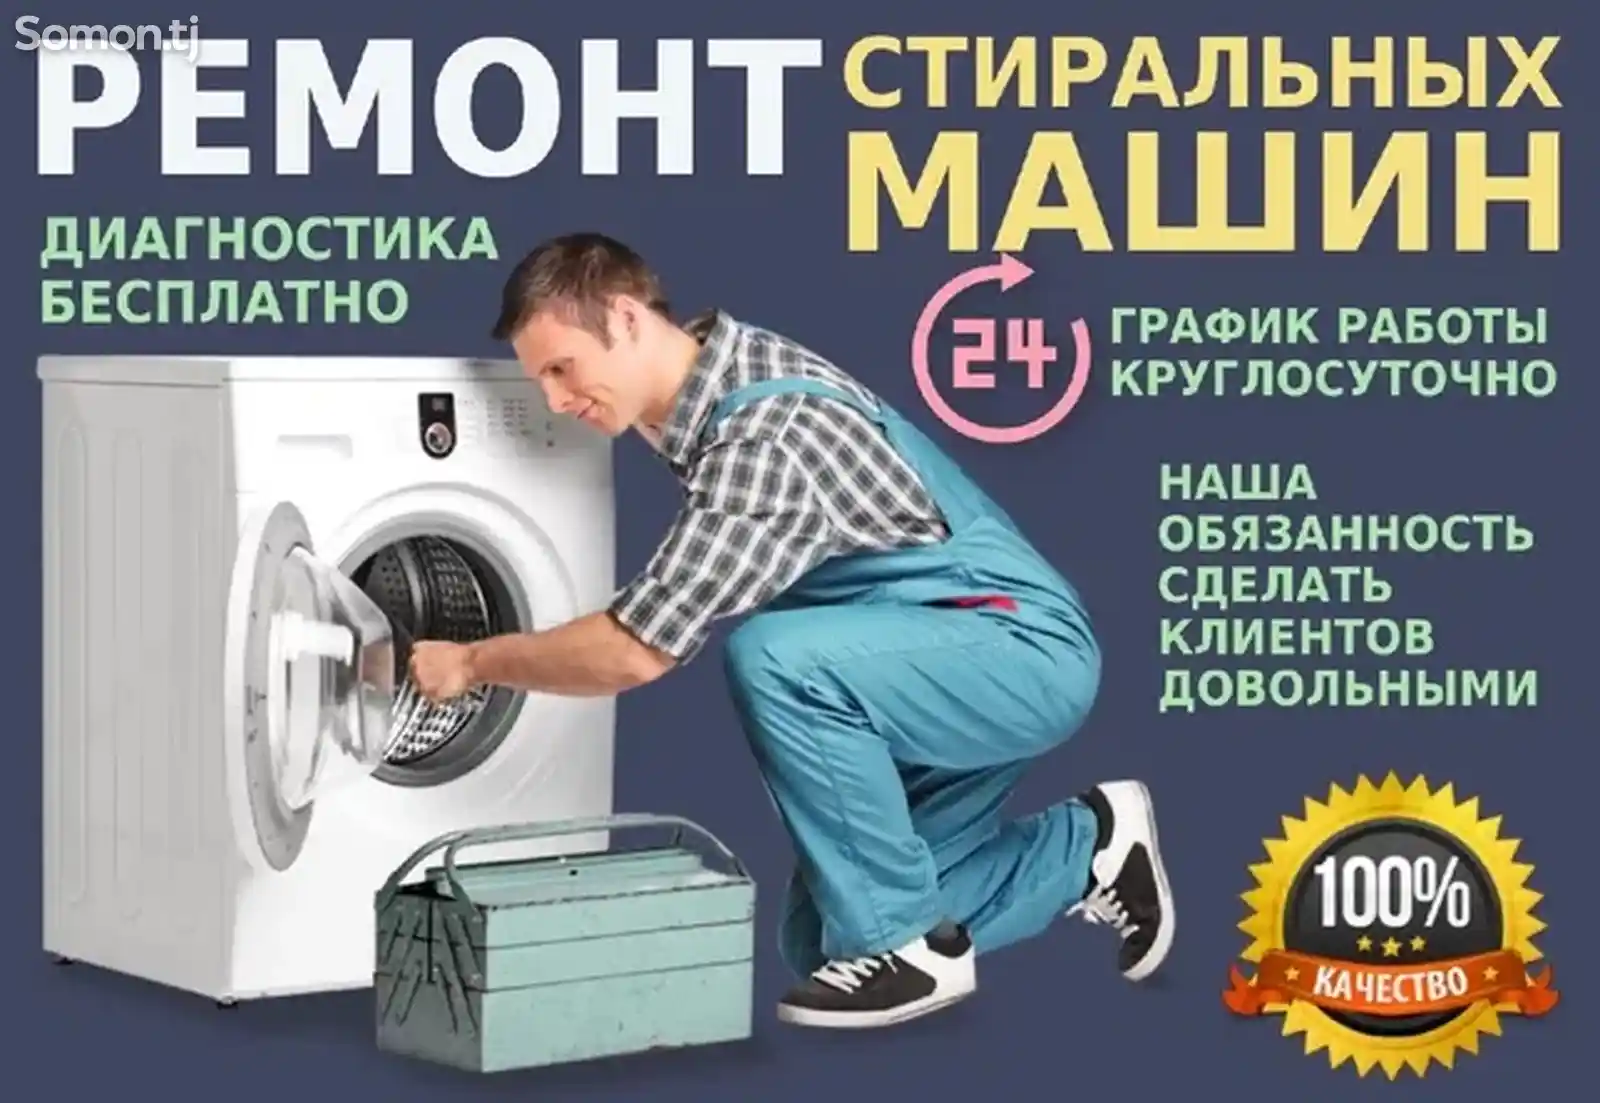 Ремонт стиральных машин на дому-4